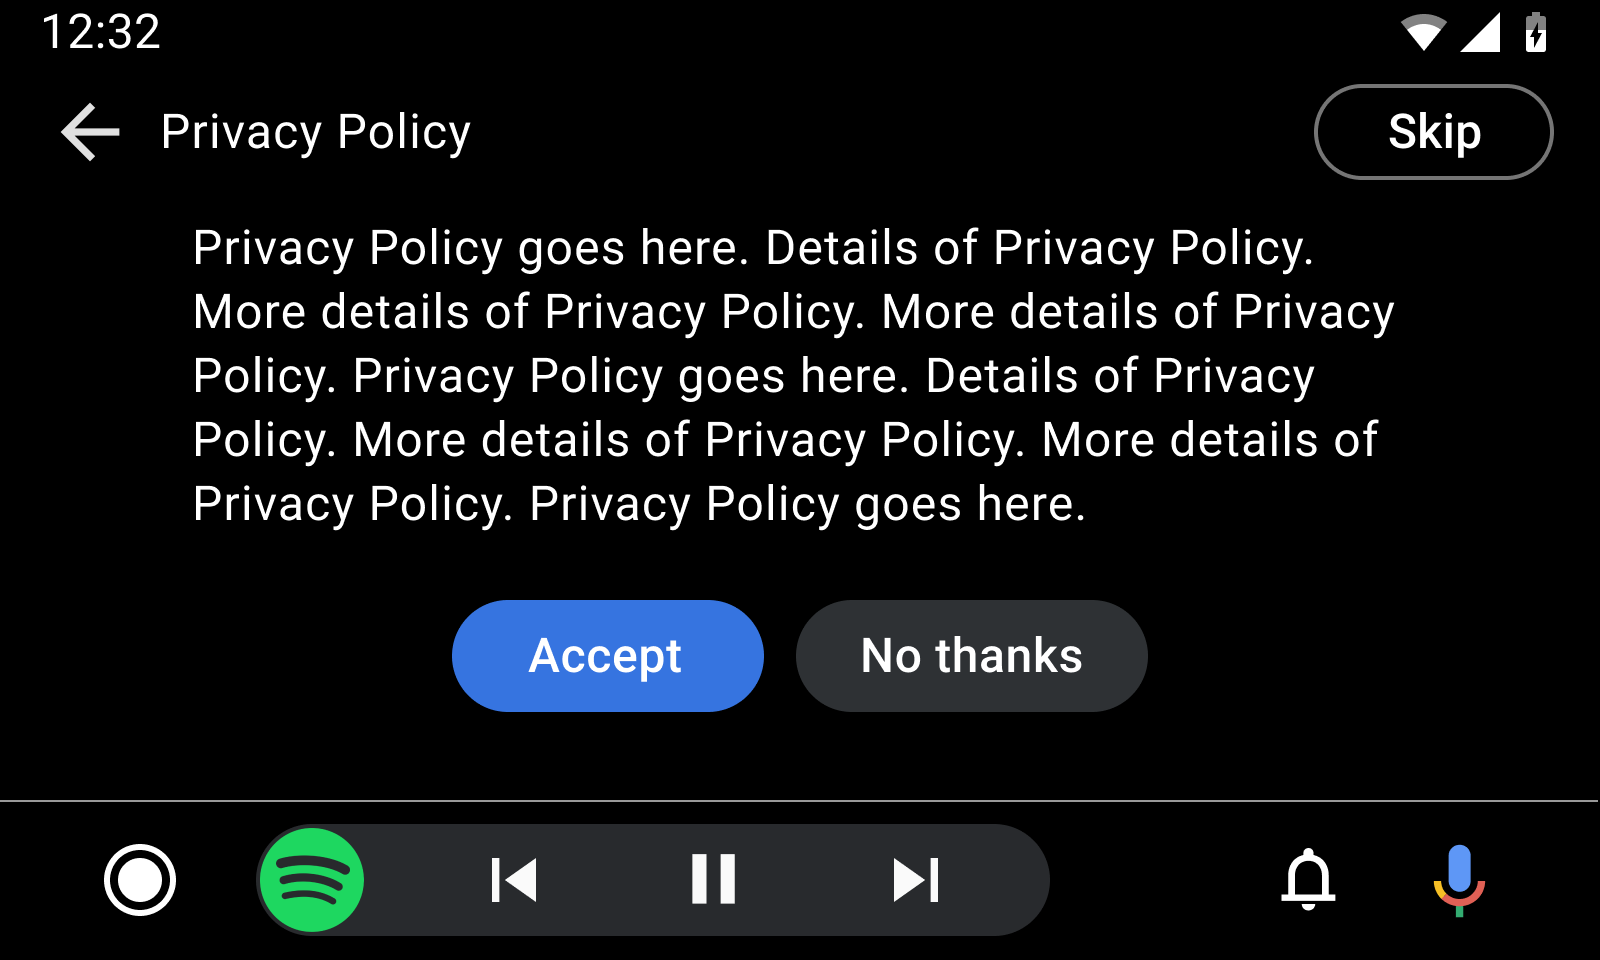 Simulación de una plantilla de mensaje largo con un ejemplo de política de privacidad